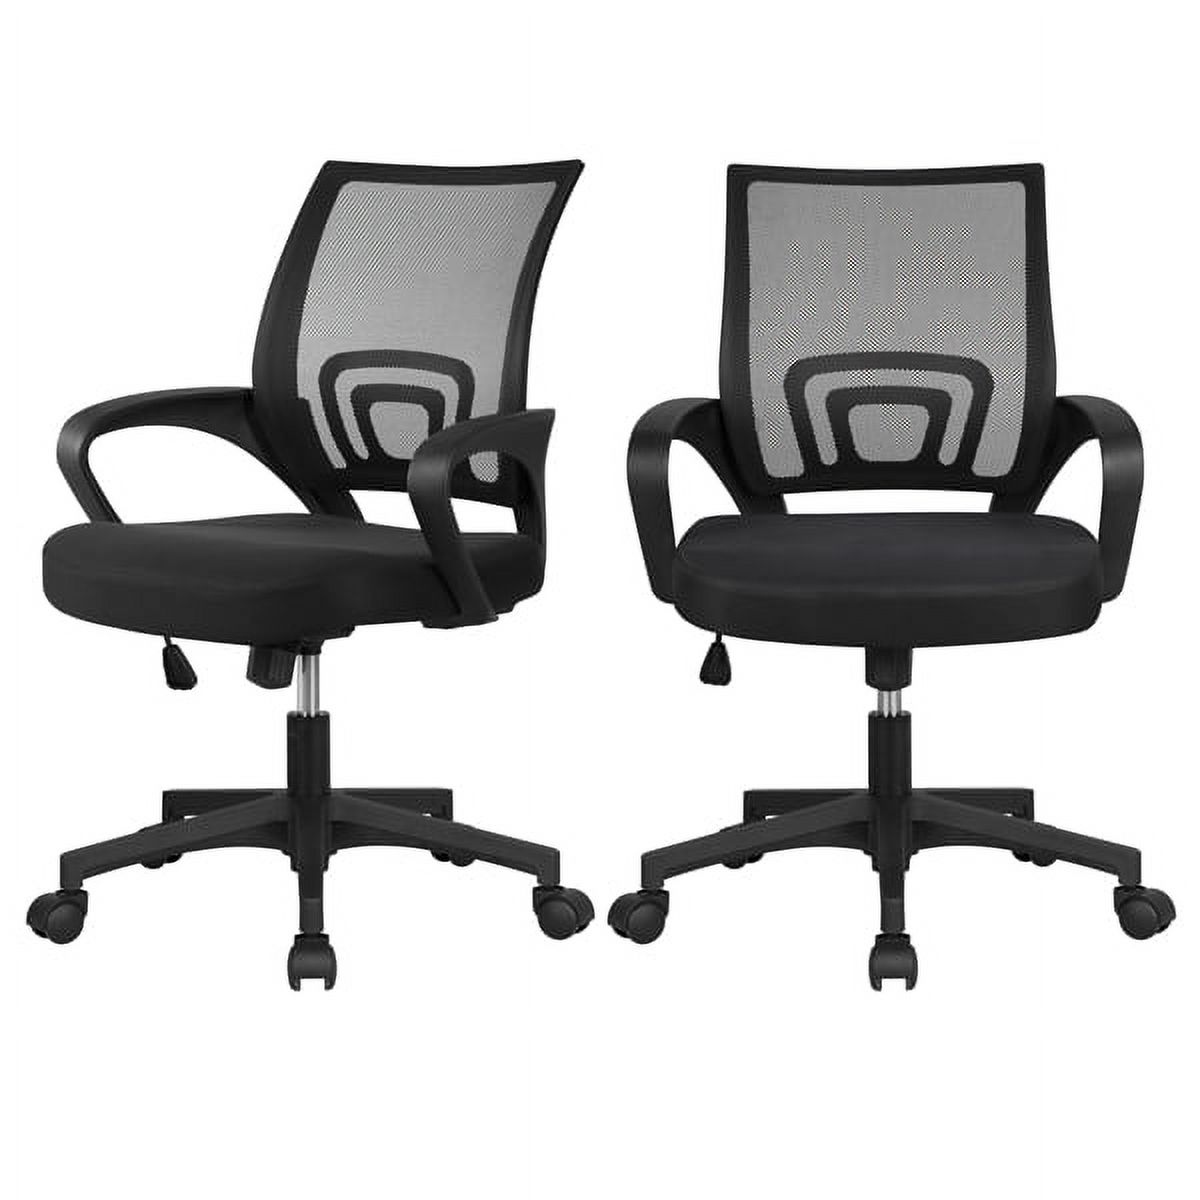 Alden Design Adjustable Mesh Swivel Office Chair with Armrest, Set of 2, Black - image 1 of 12